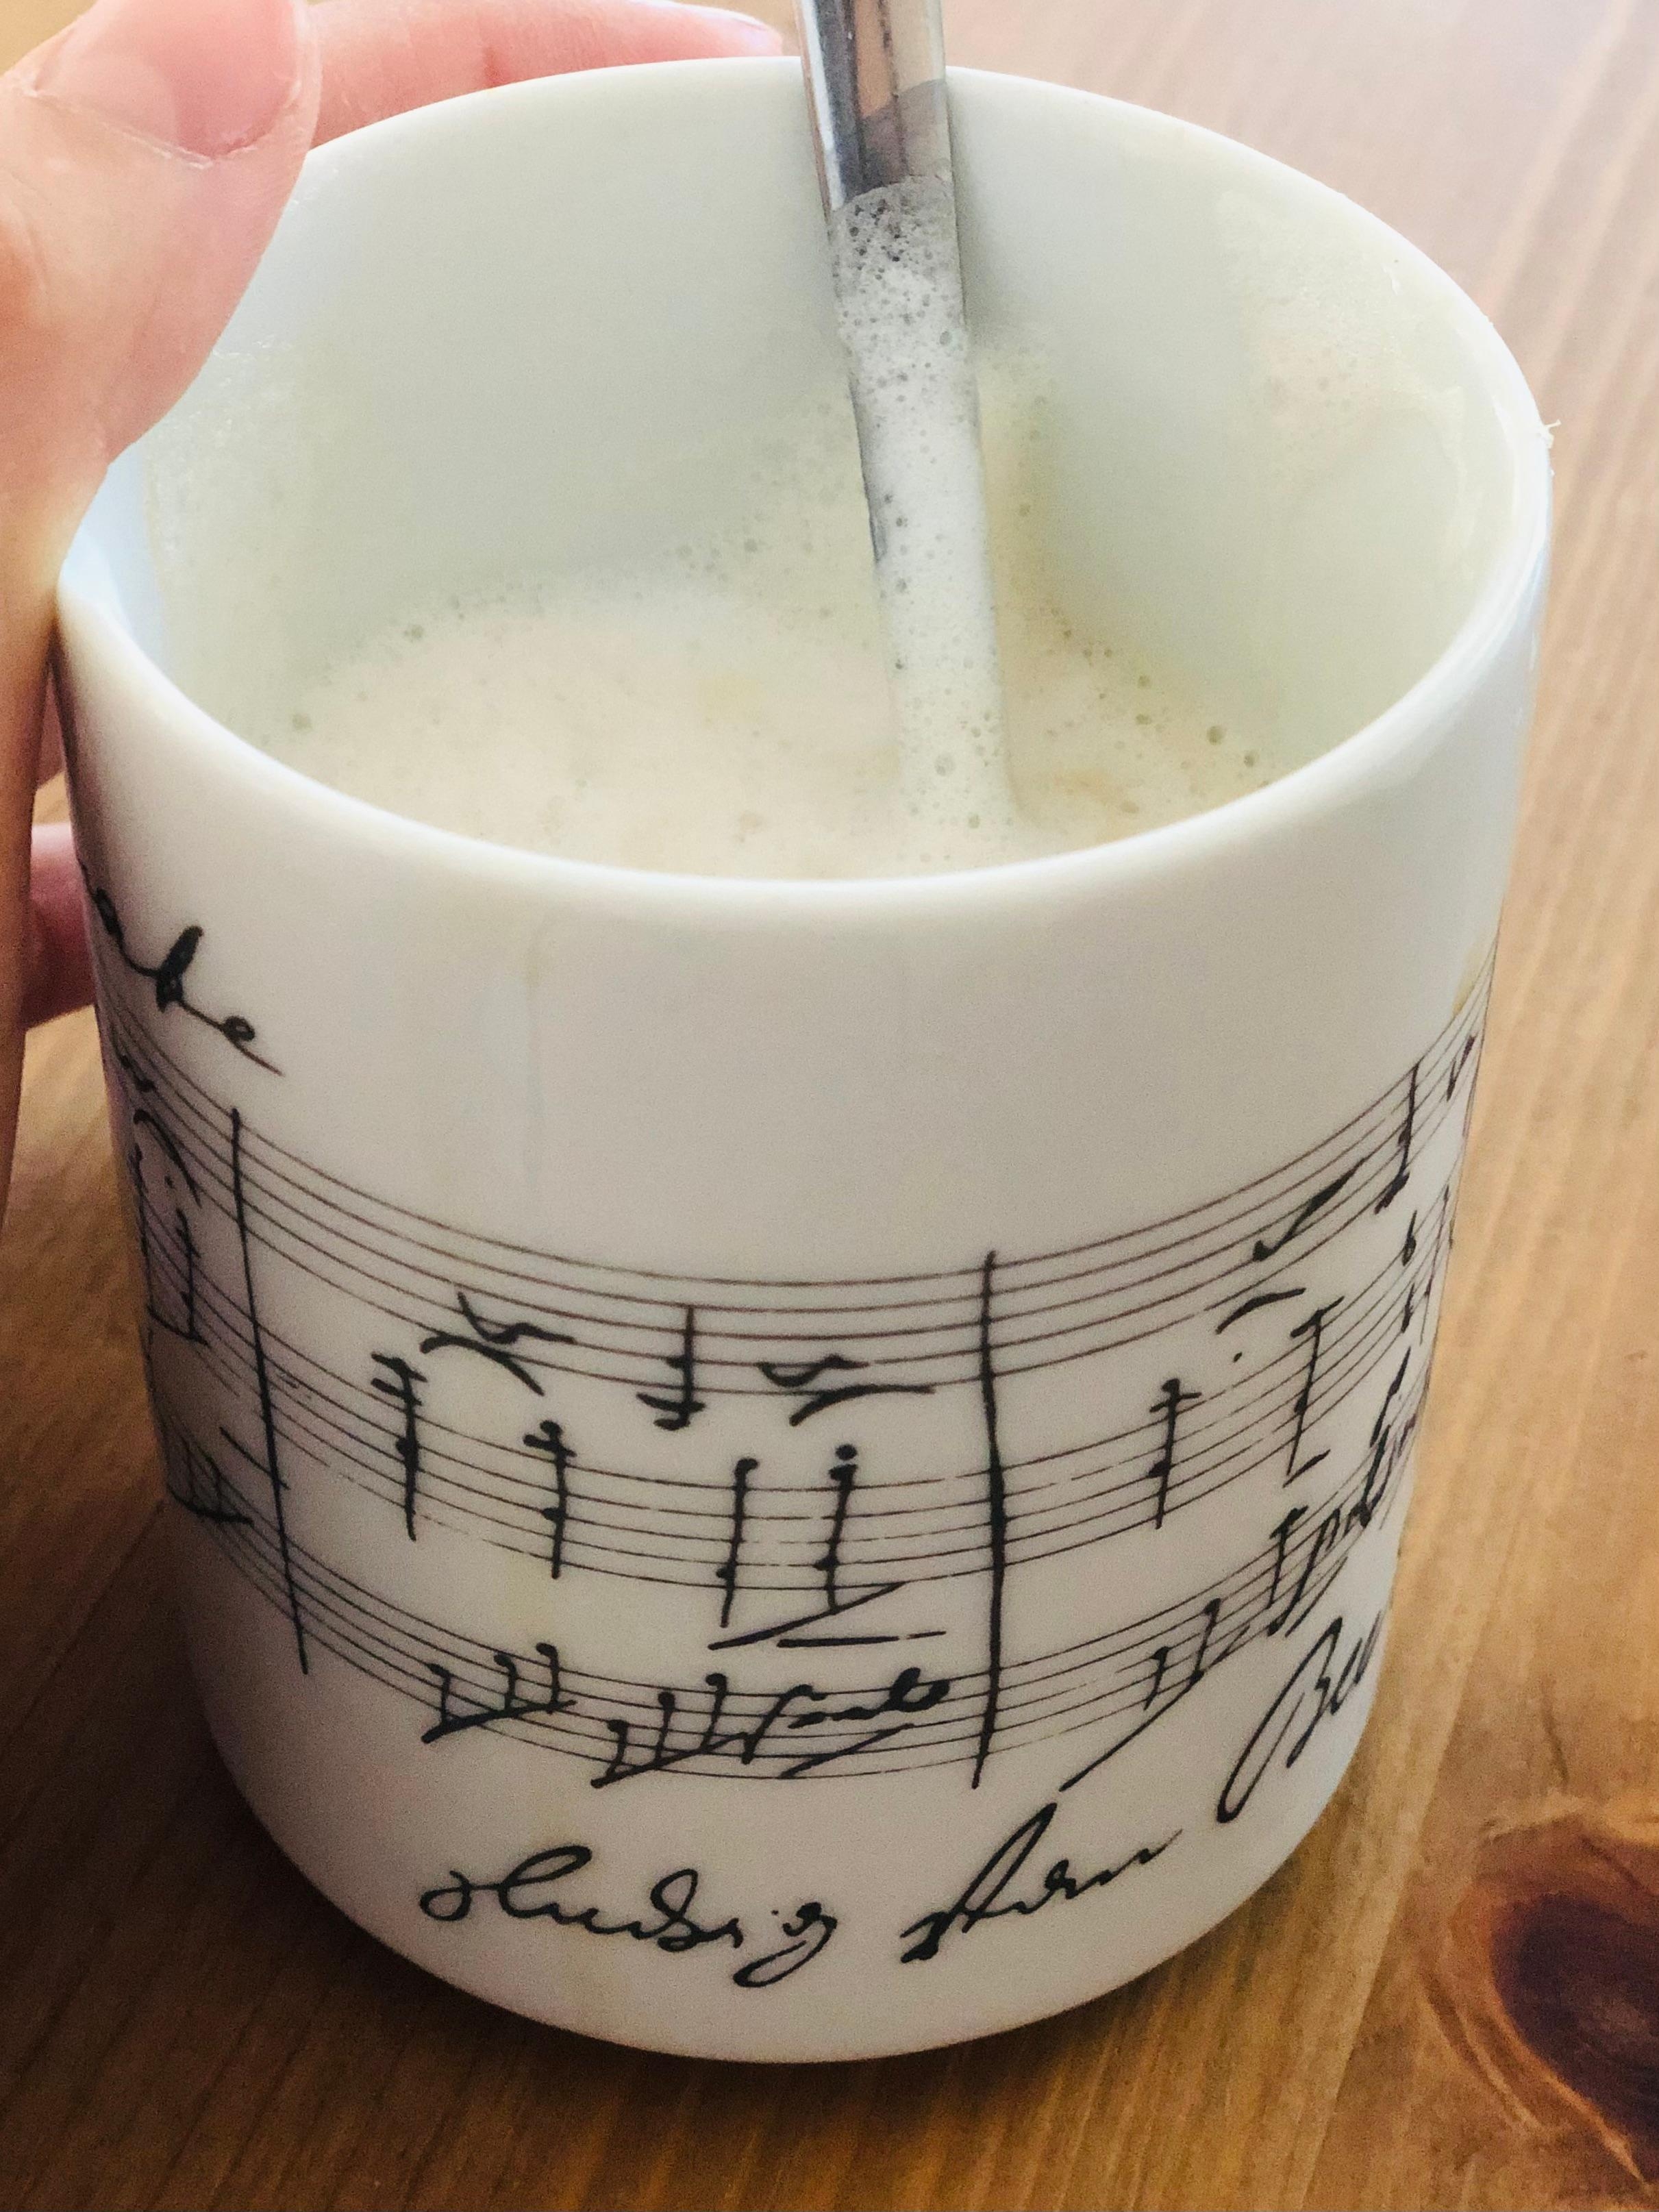 Musik für meine Seele. #kaffeeliebe #livingchallenge #morgens